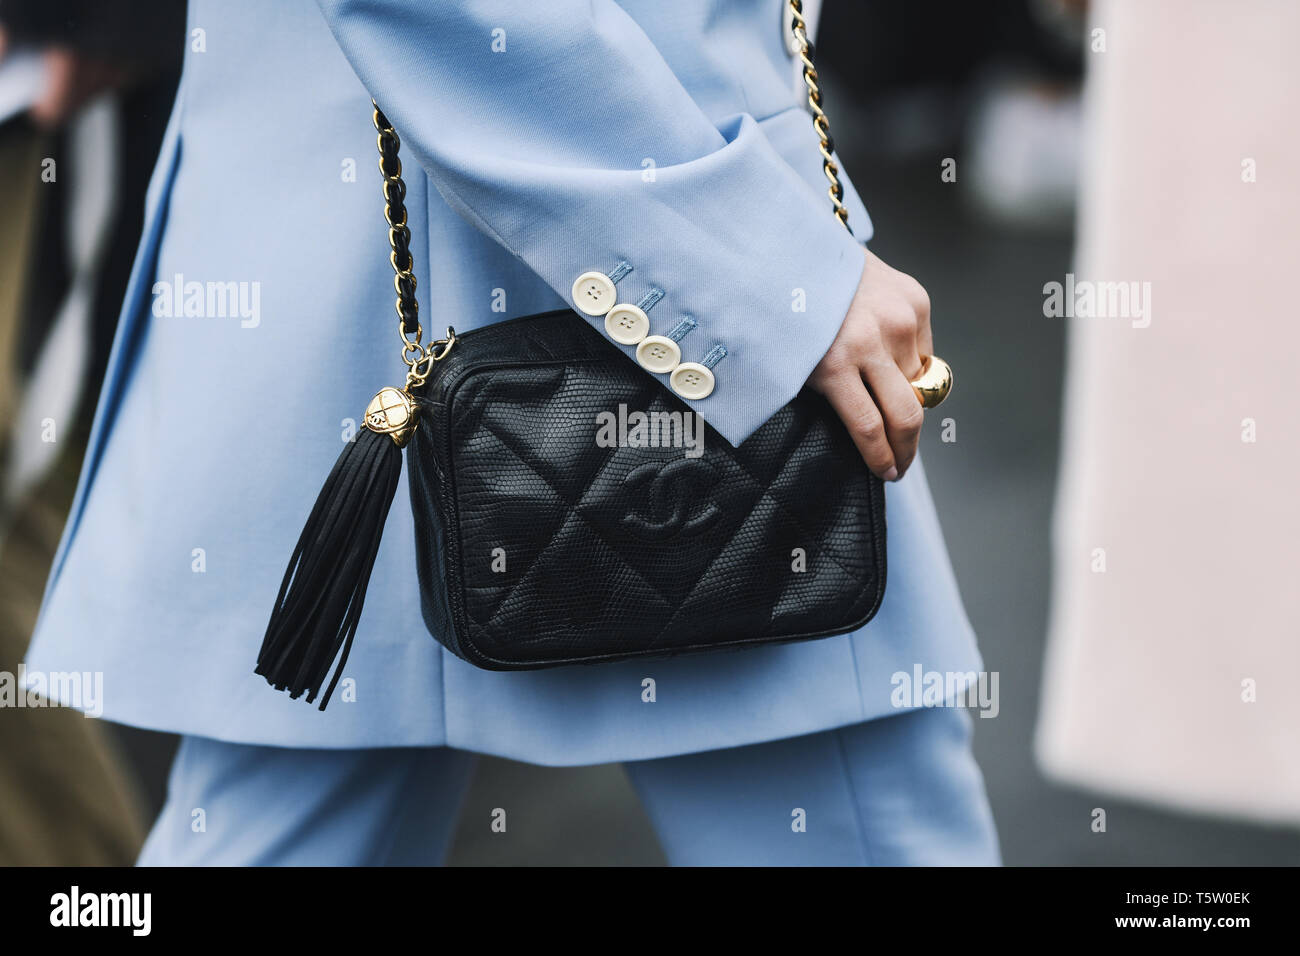 Chanel purse immagini e fotografie stock ad alta risoluzione - Alamy